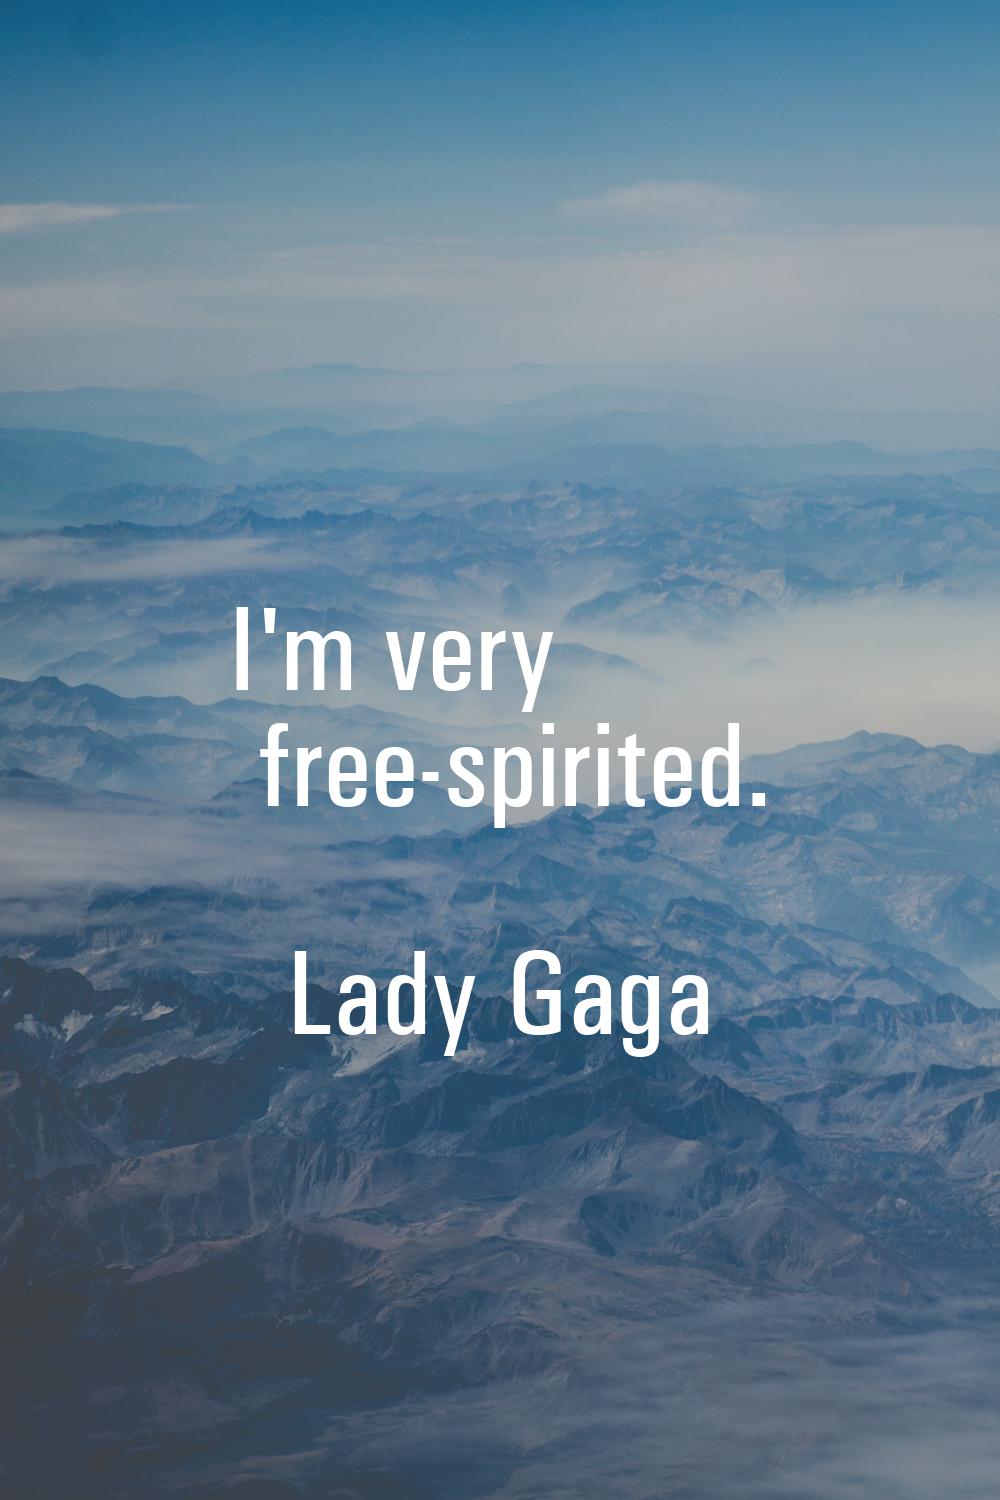 I'm very free-spirited.